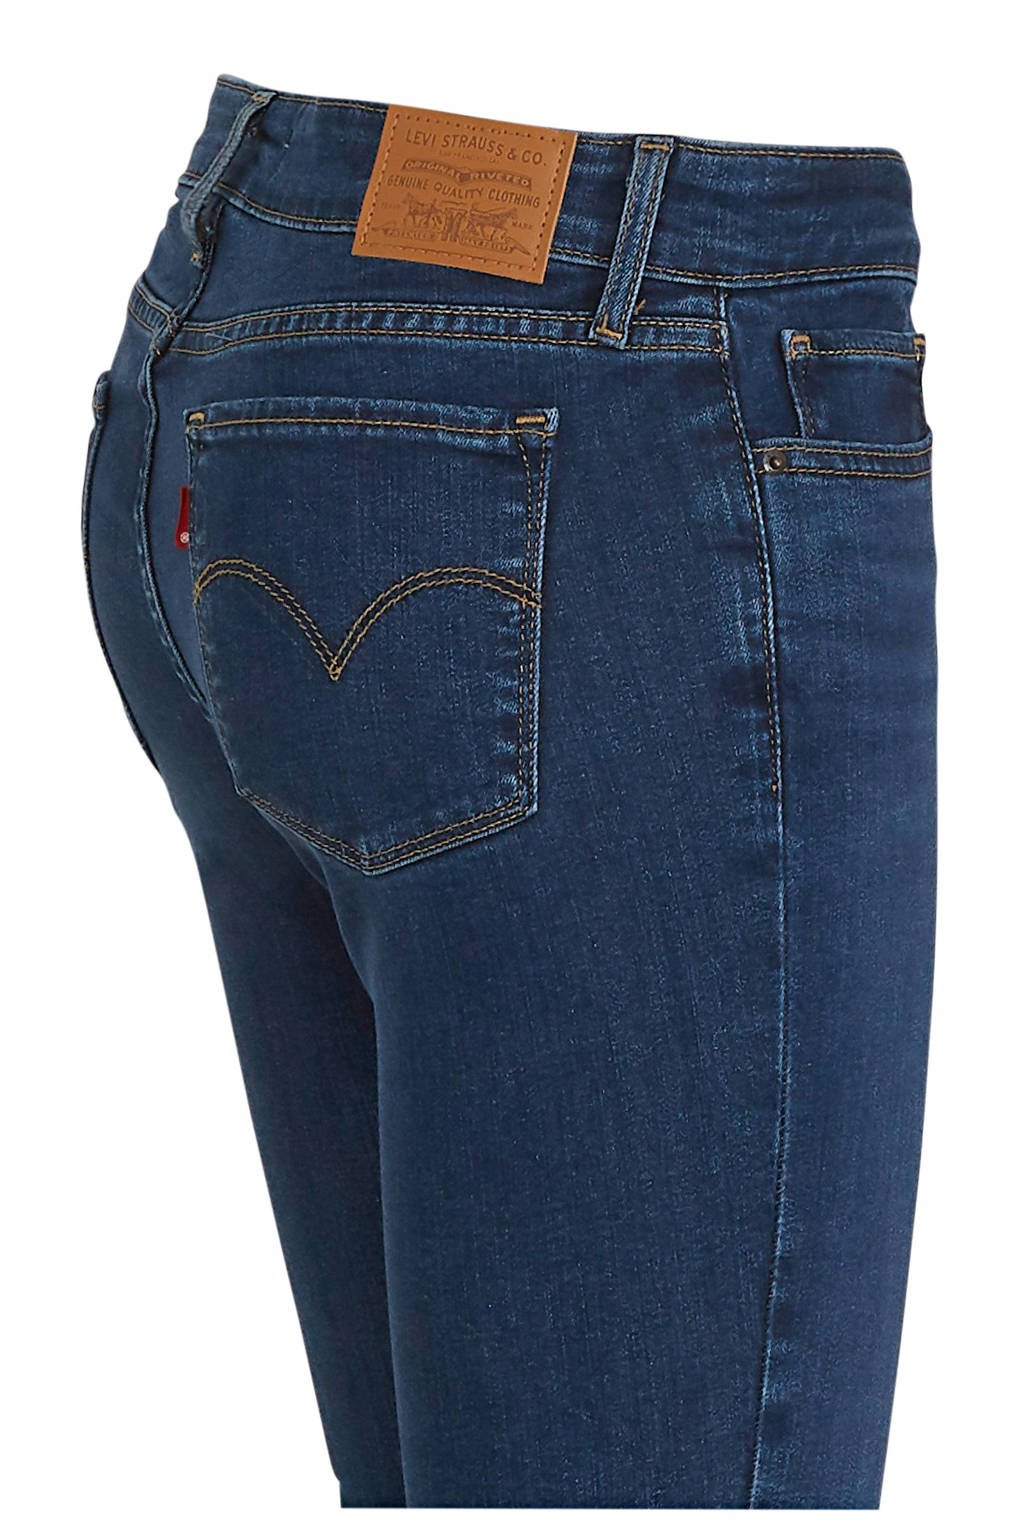 Voorkeursbehandeling feit verband Levi's 711 skinny jeans dark denim | wehkamp